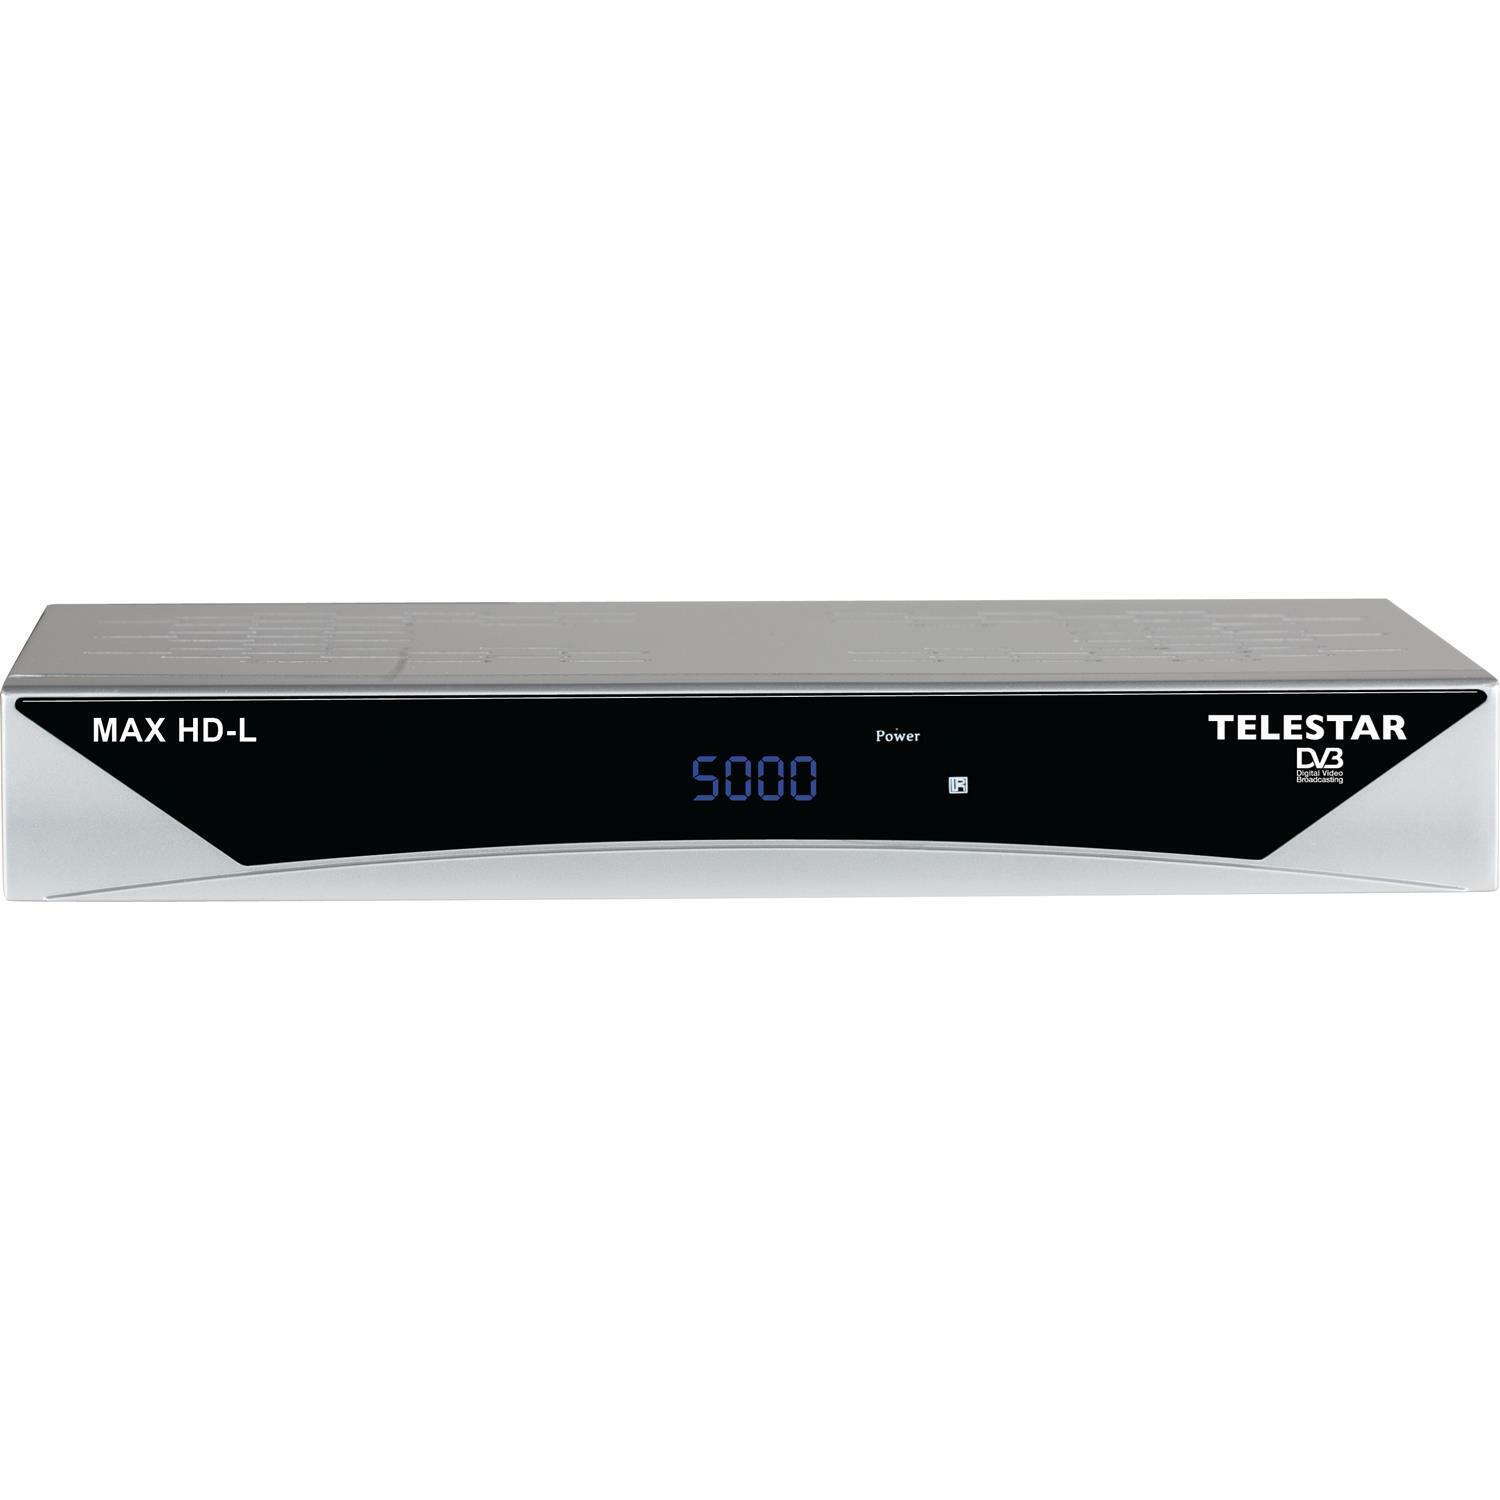 TELESTAR MAX HD-L digitaler Satellitenreceiver gebraucht / generalüberholte Ware